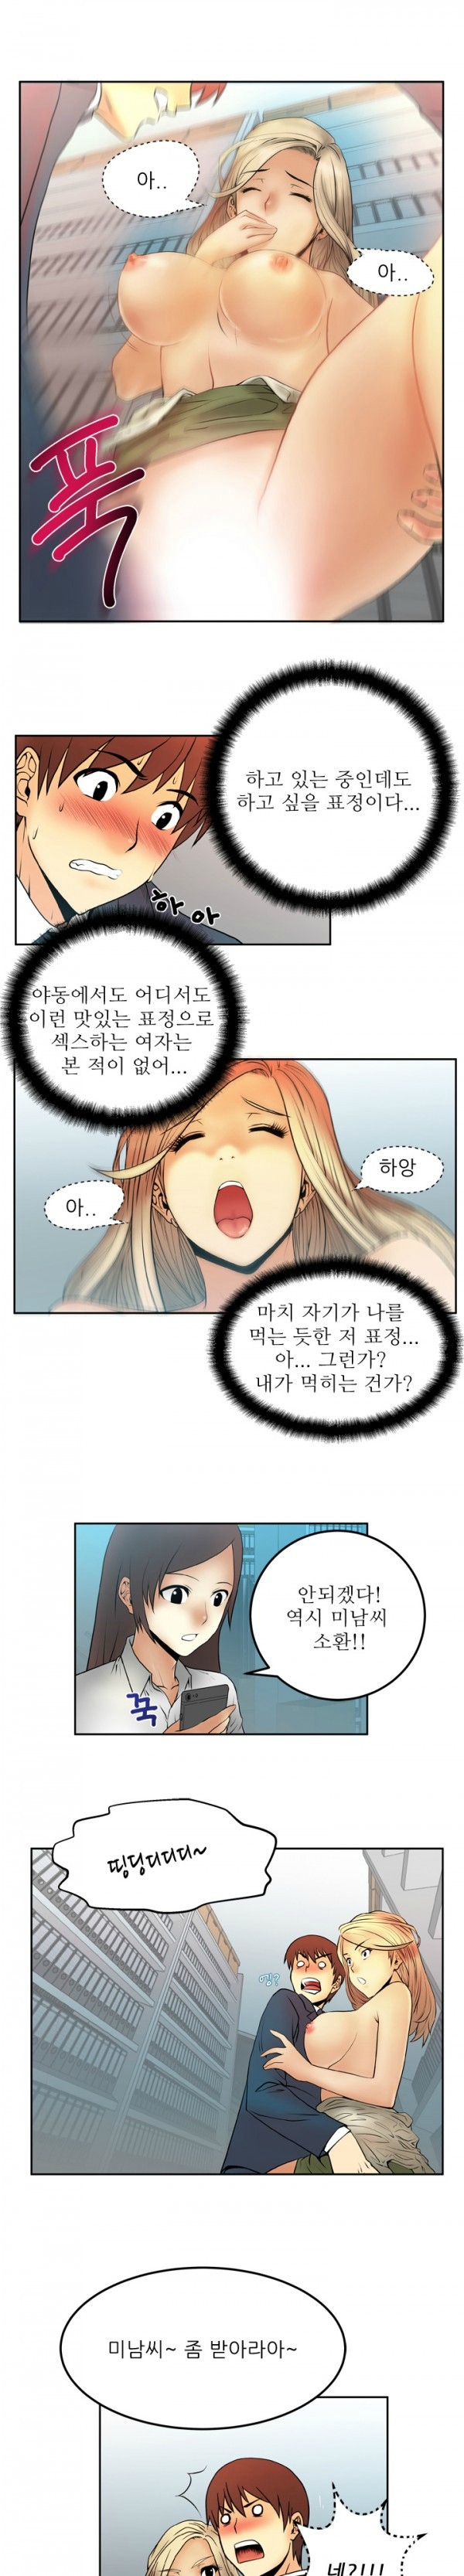 [Minu Mindu] Office Lady Vol. 1 [Korean] 49